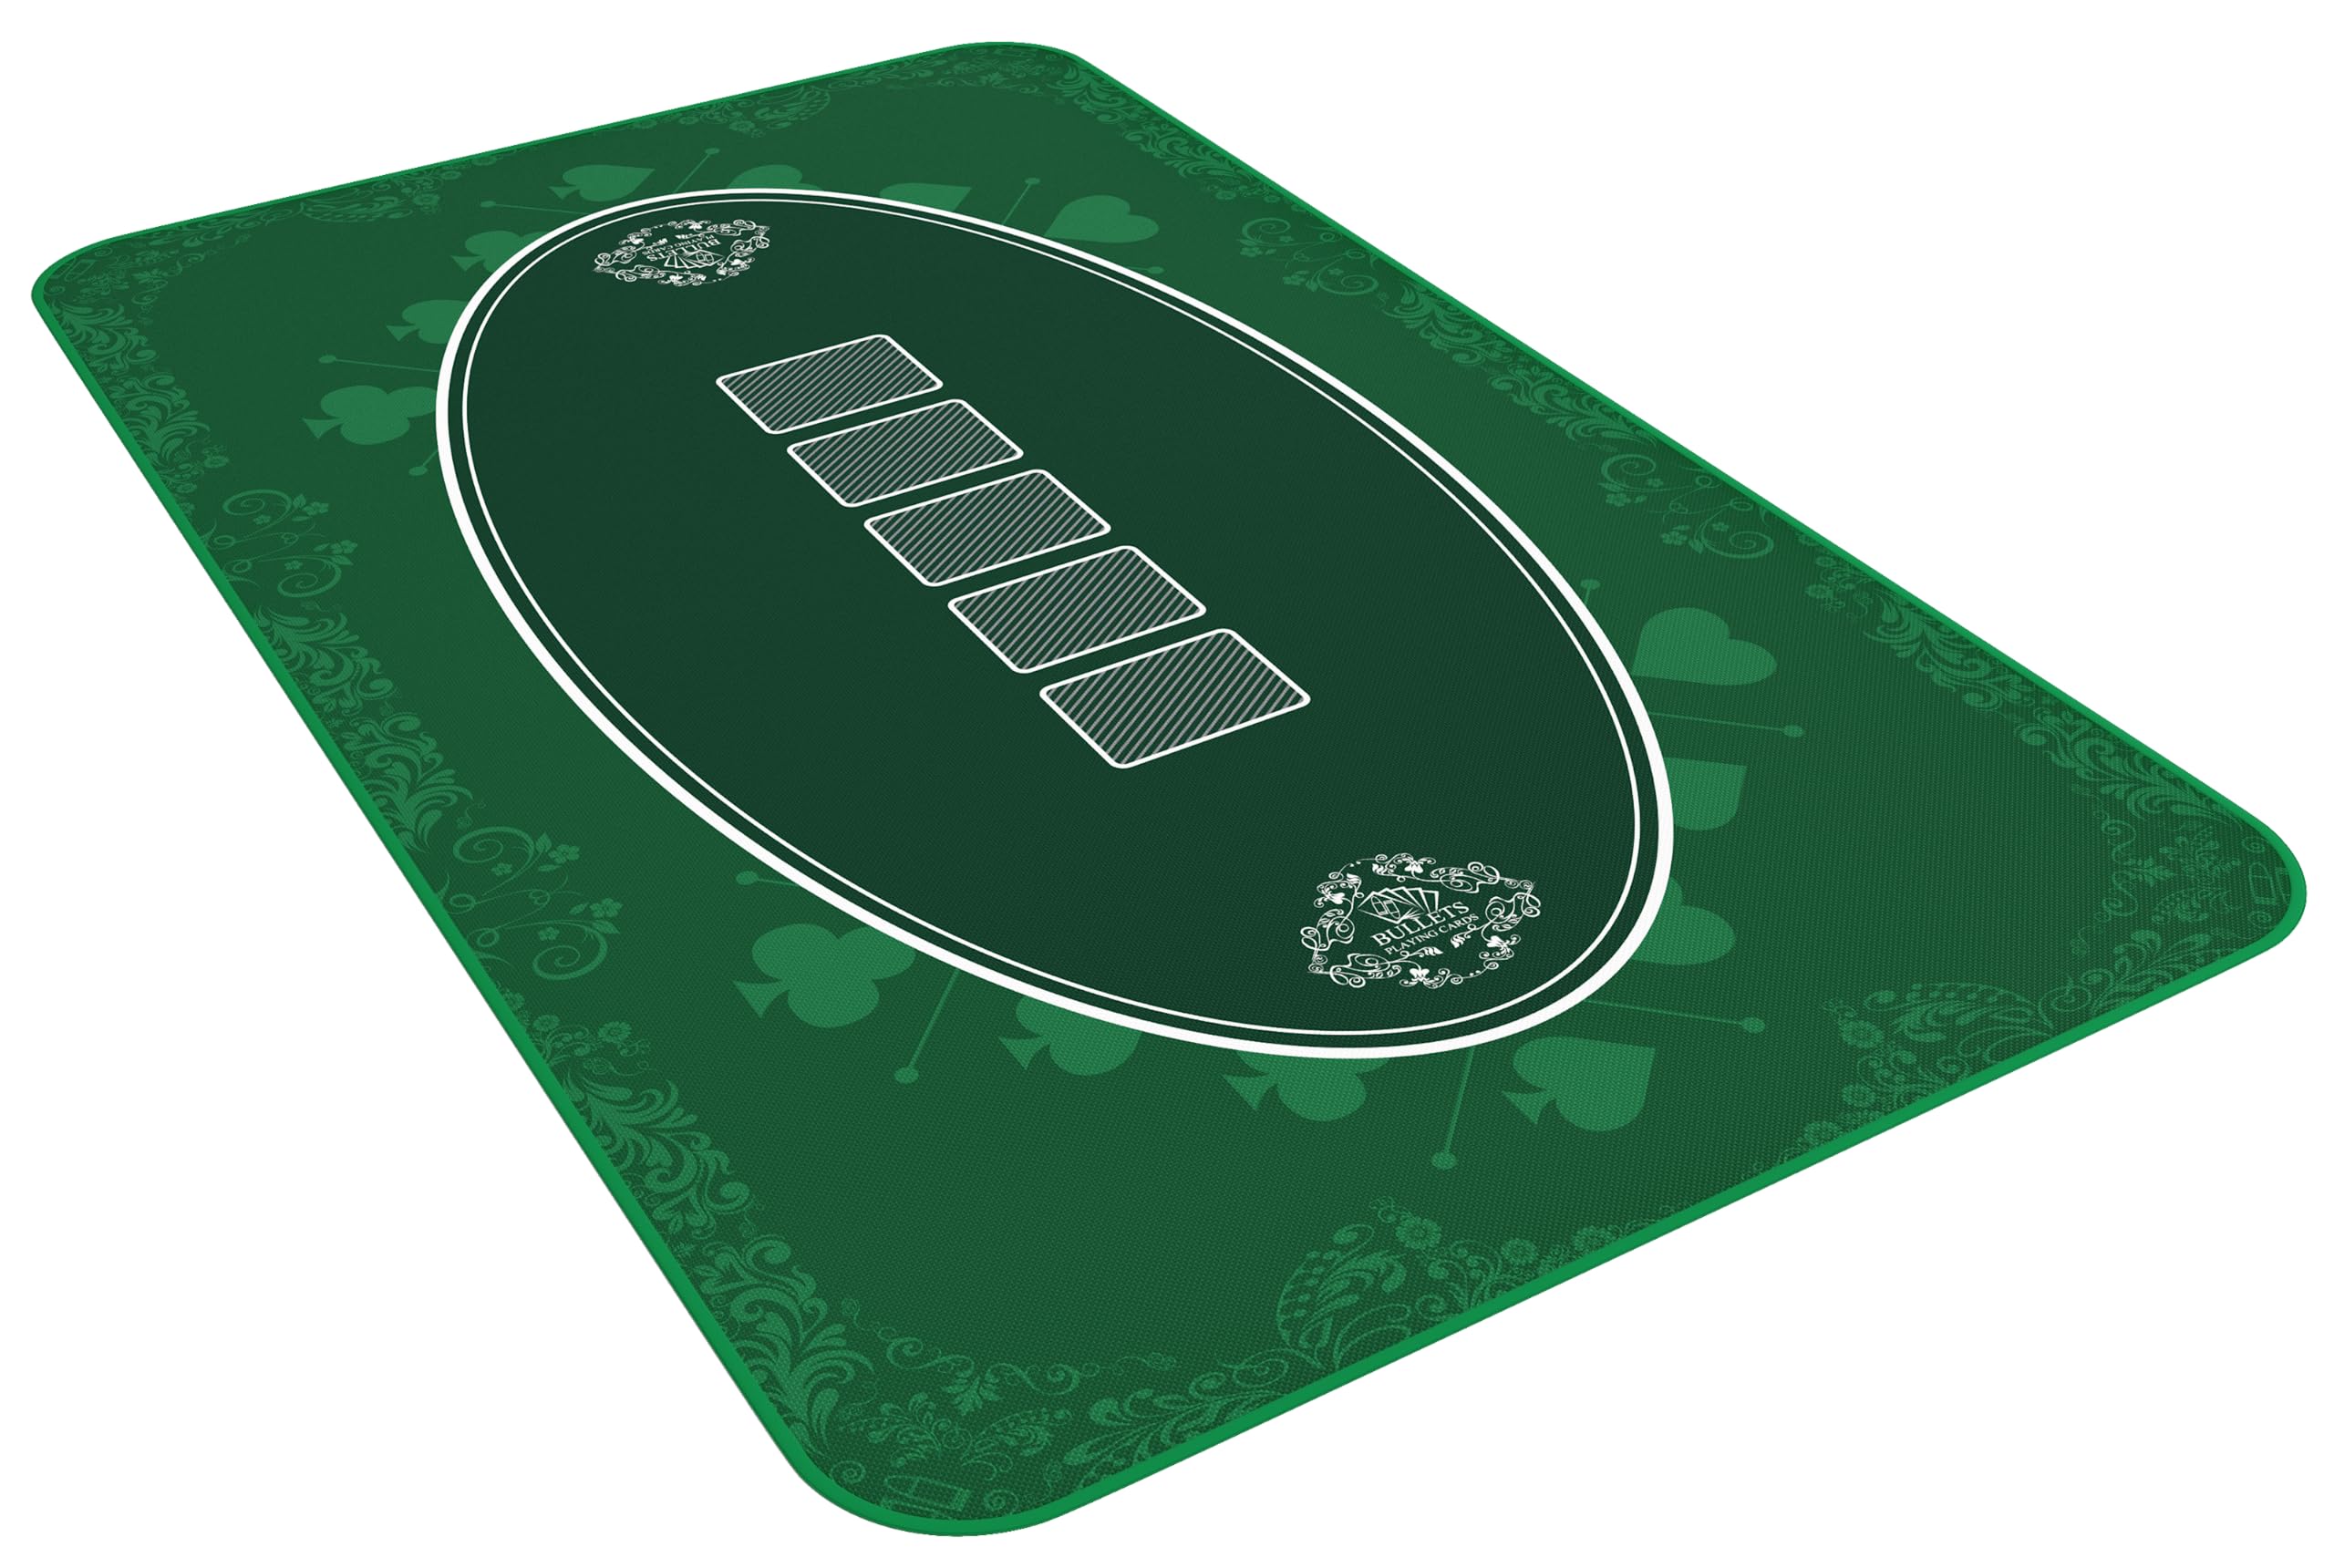 Bullets Playing Cards Designer Pokermatte grün in 100 x 60cm - für den eigenen Pokertisch - Deluxe Pokertuch – Pokerteppich – Pokertischauflage